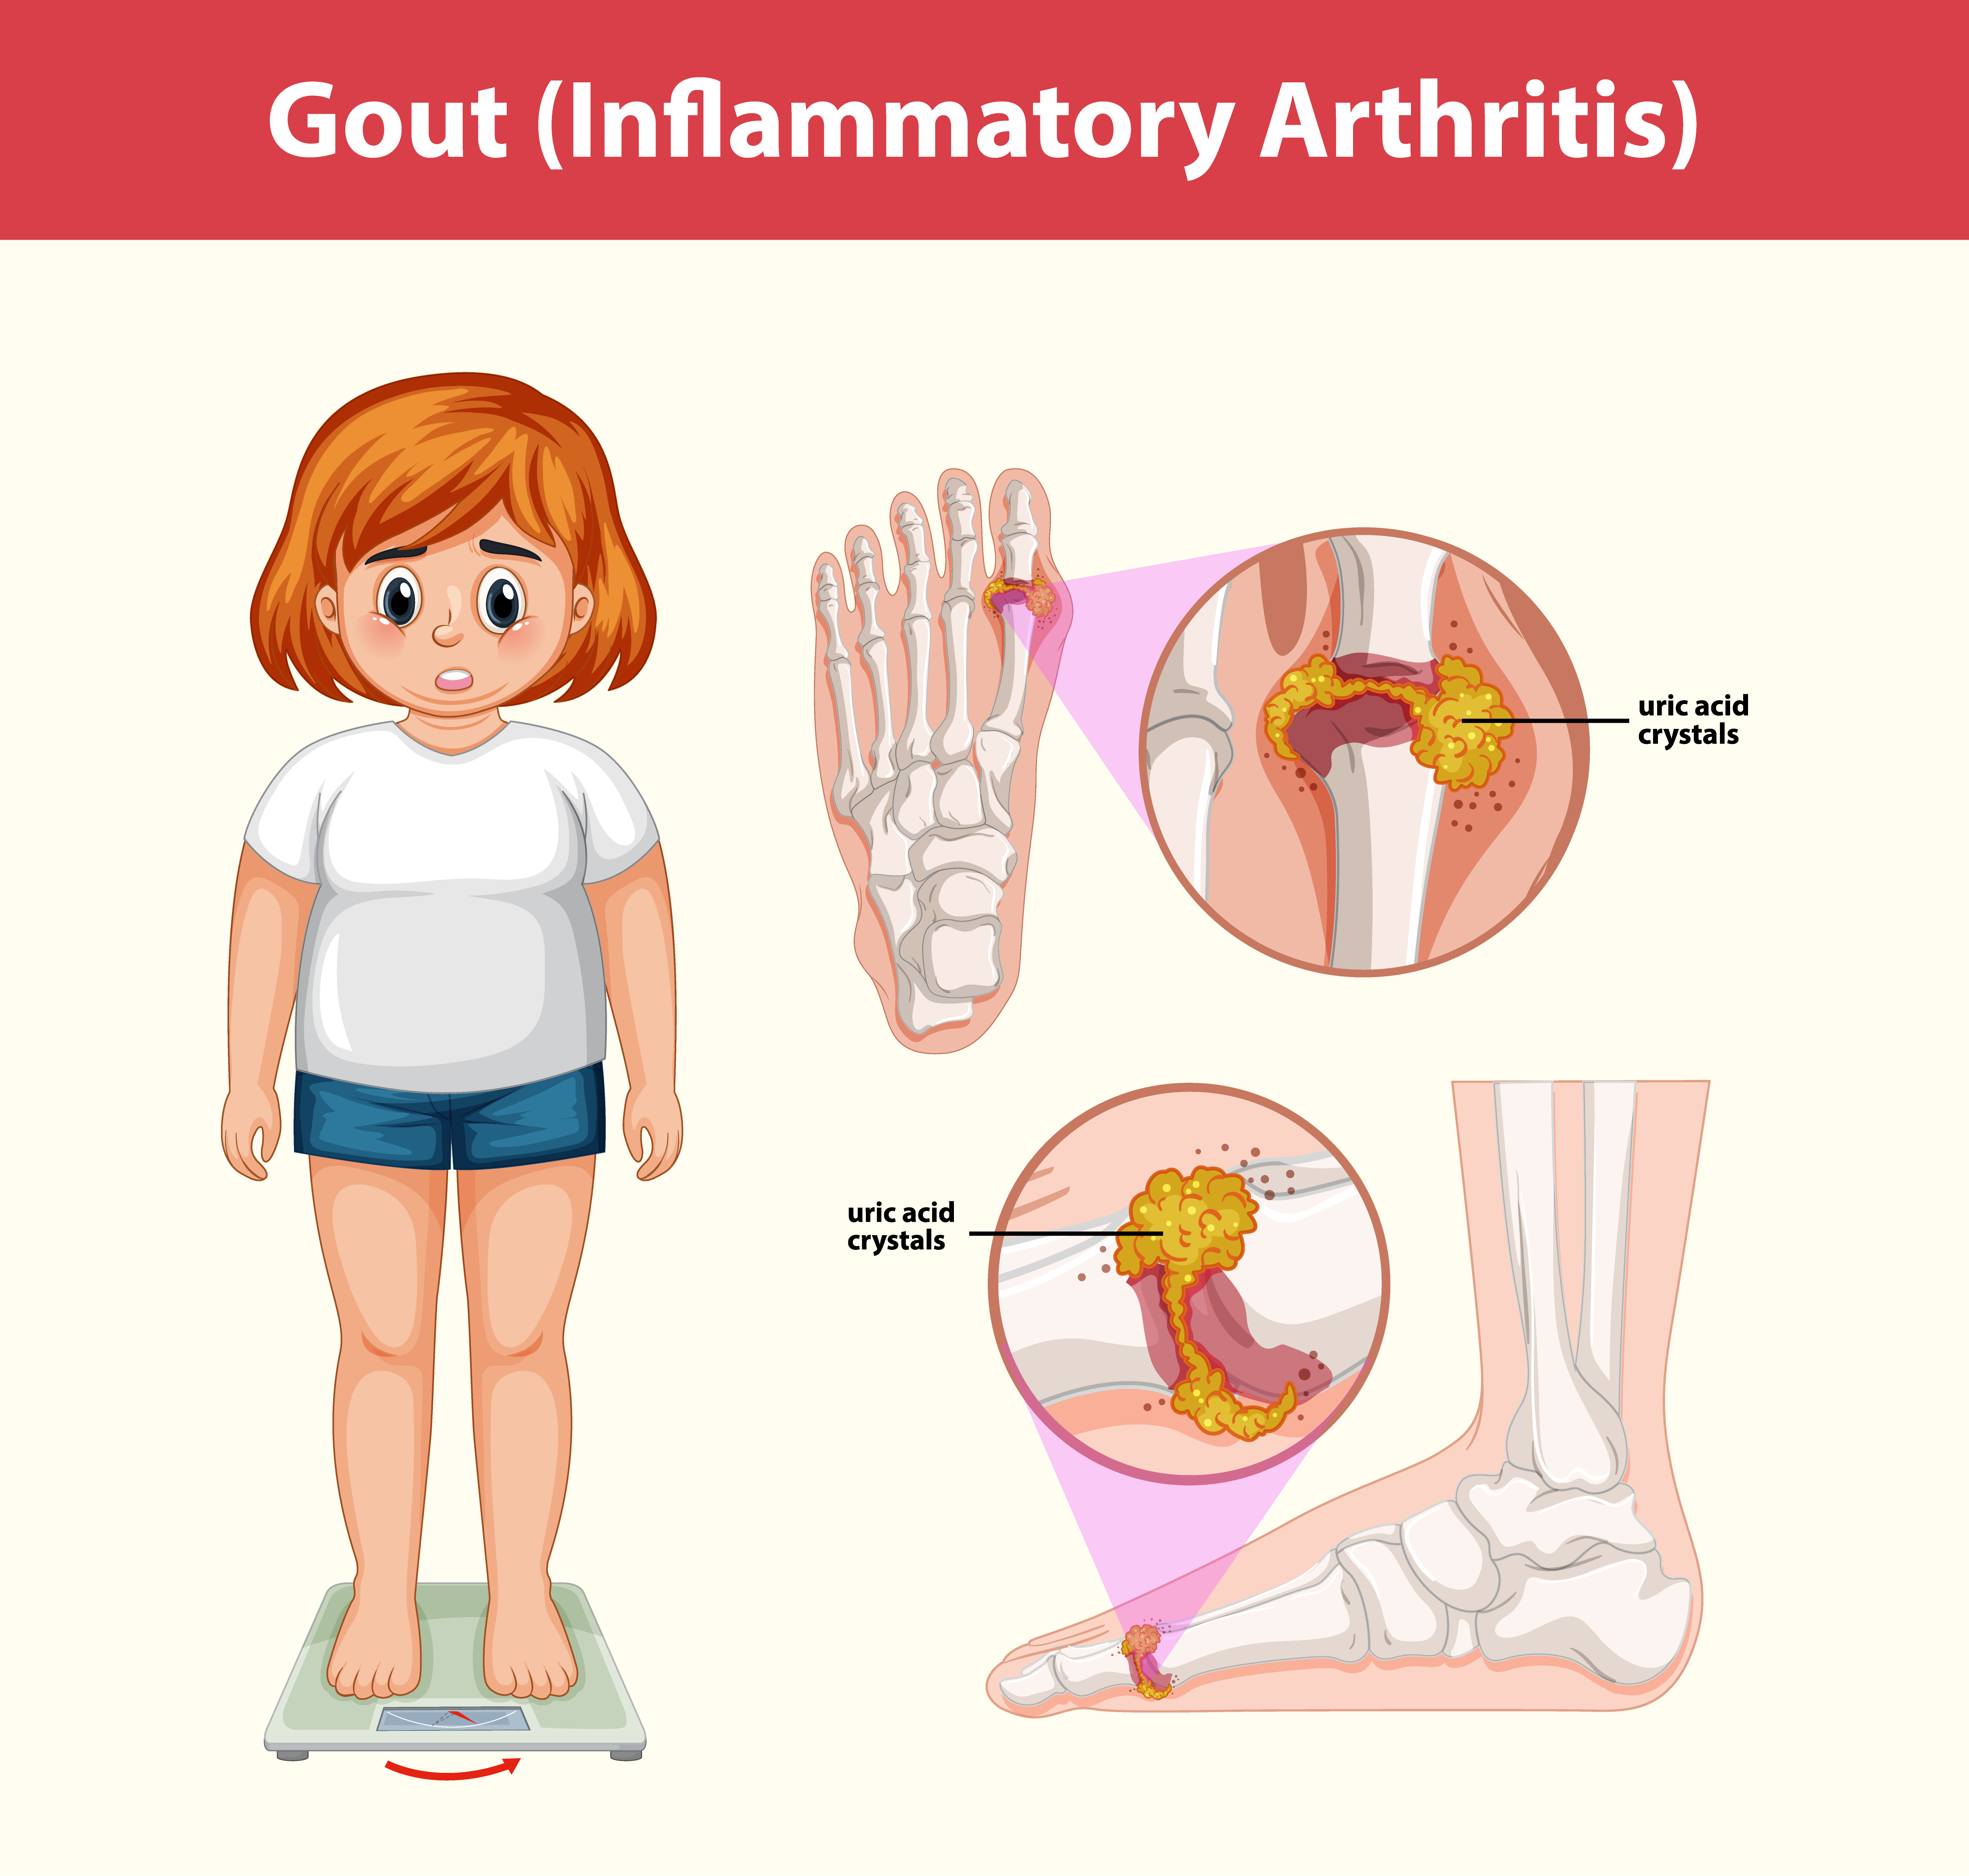 통풍의 원인과 형상을 표현한 이미지 (gout (inflammatory arthritis) medical information)